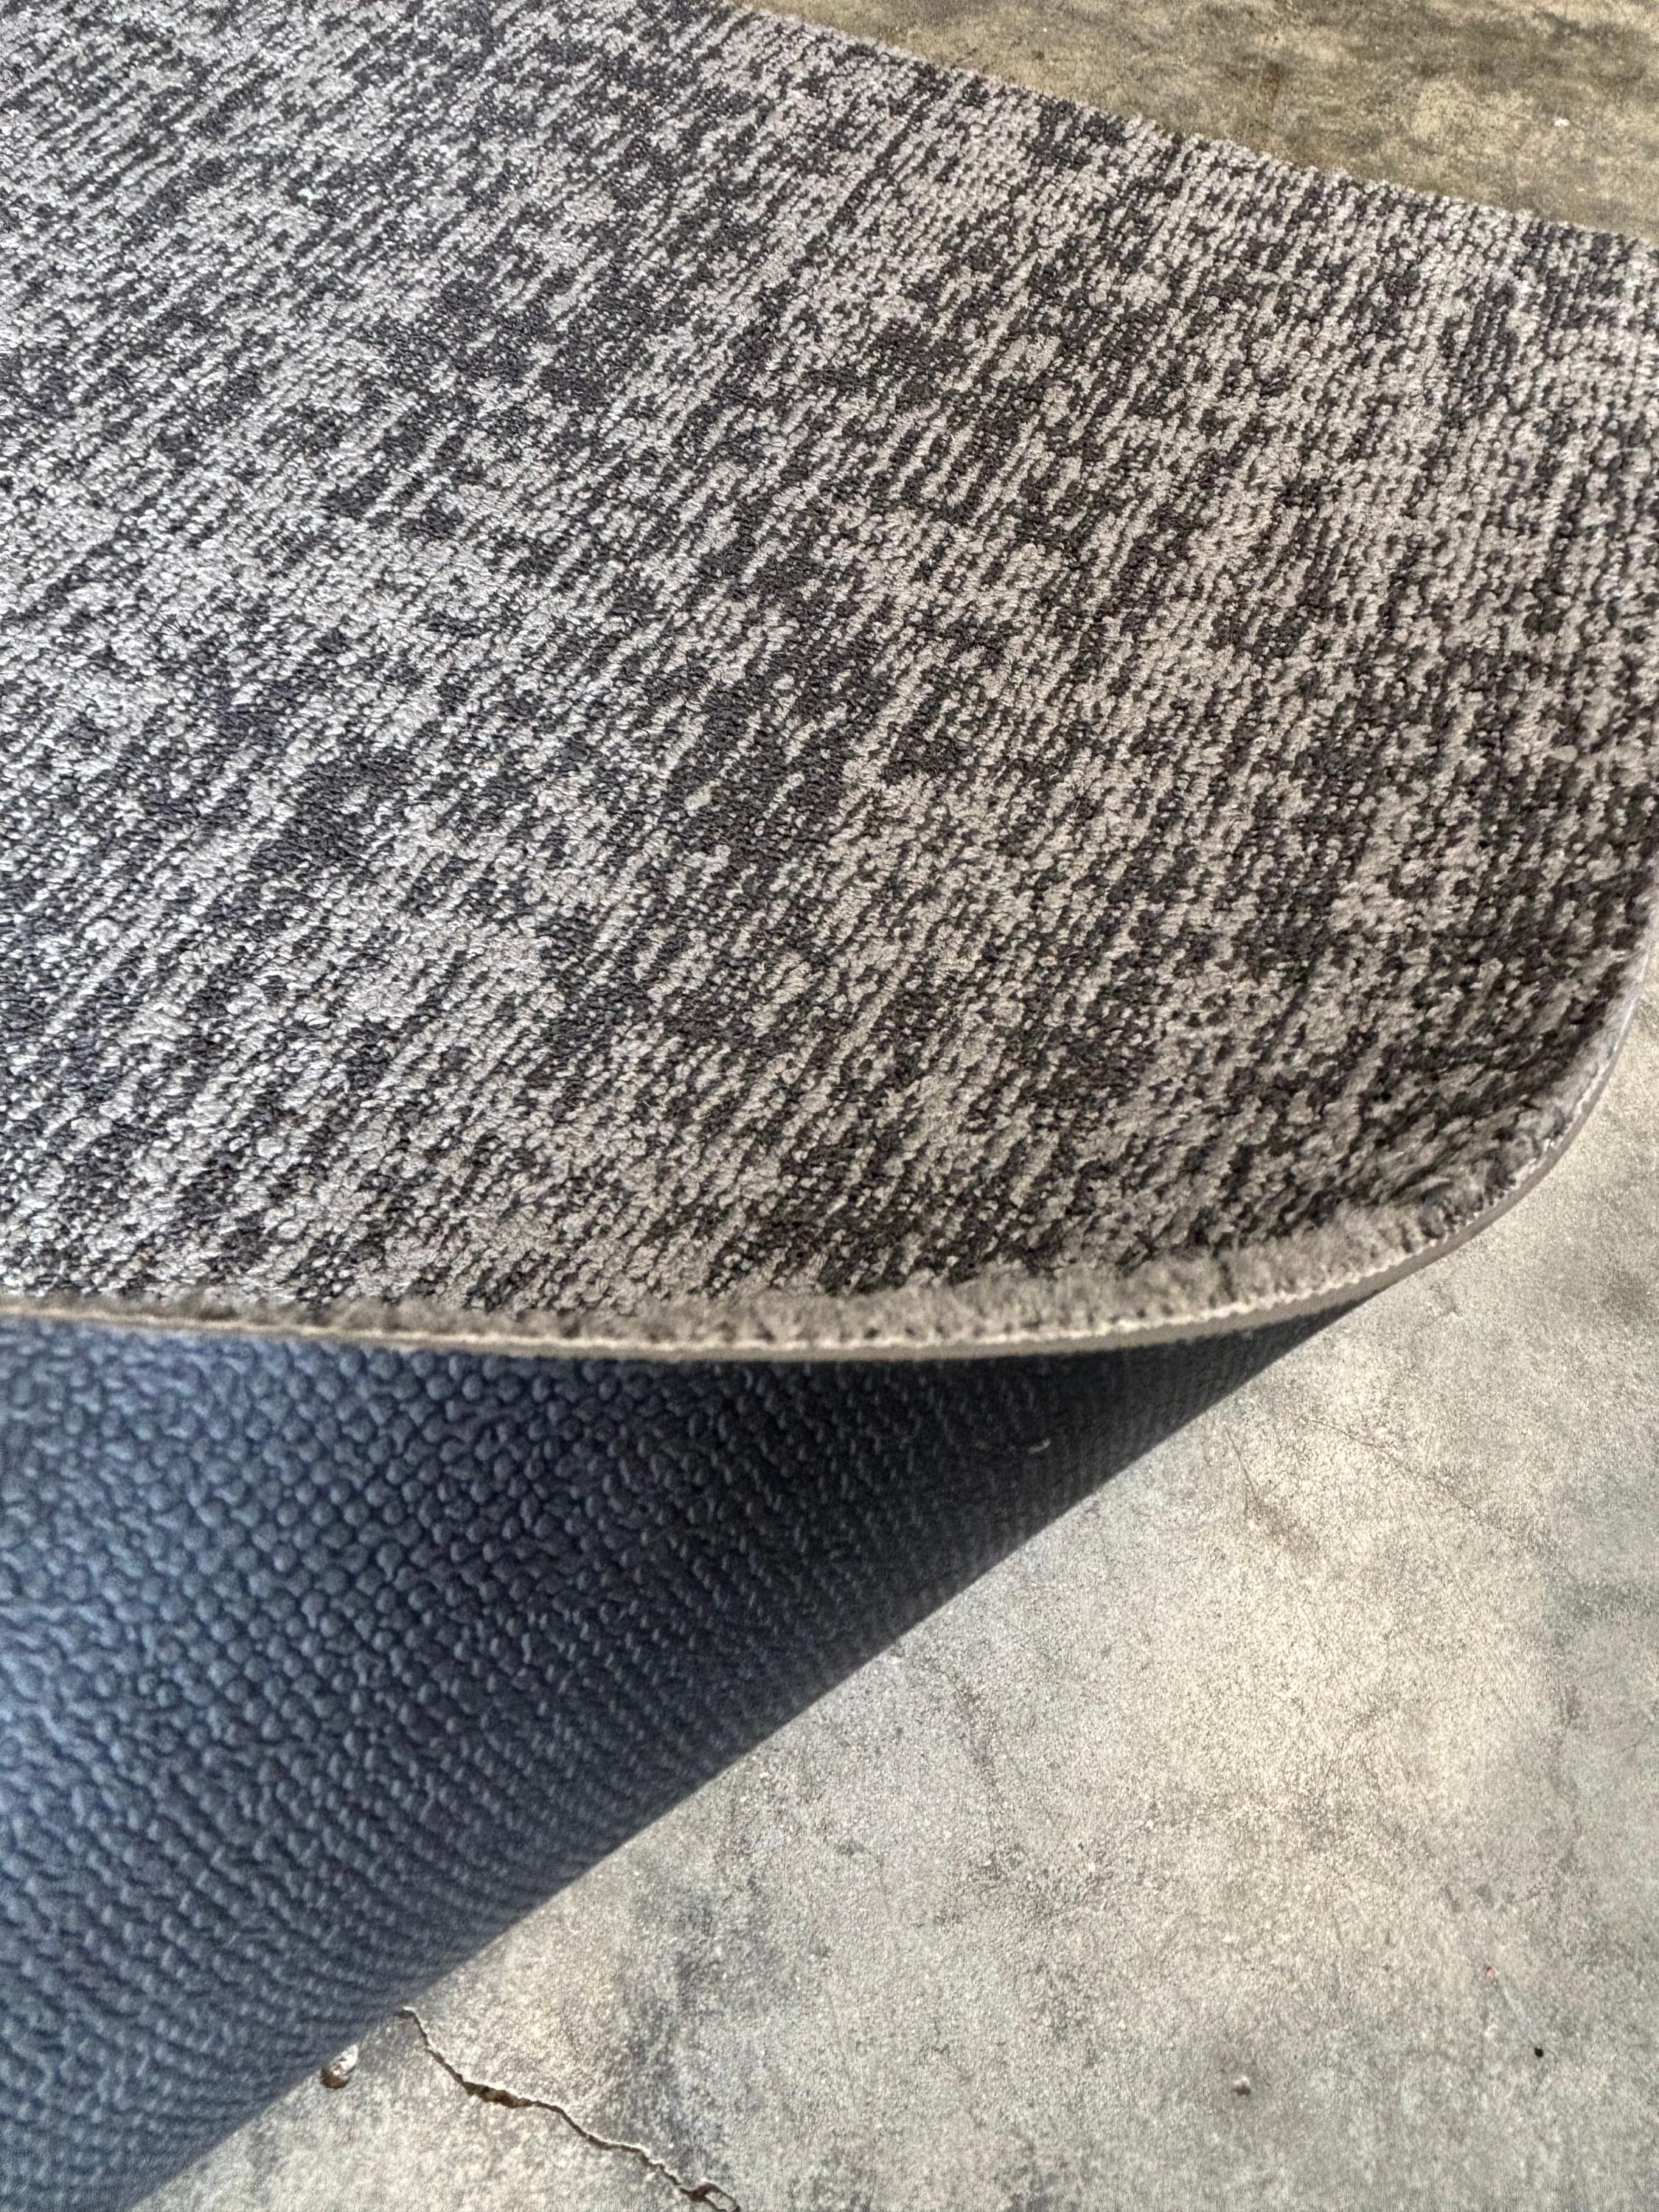 Gray Carpet Tiles Commercial Grade Office Basement Flooring Squares Grey New Vinyl Back